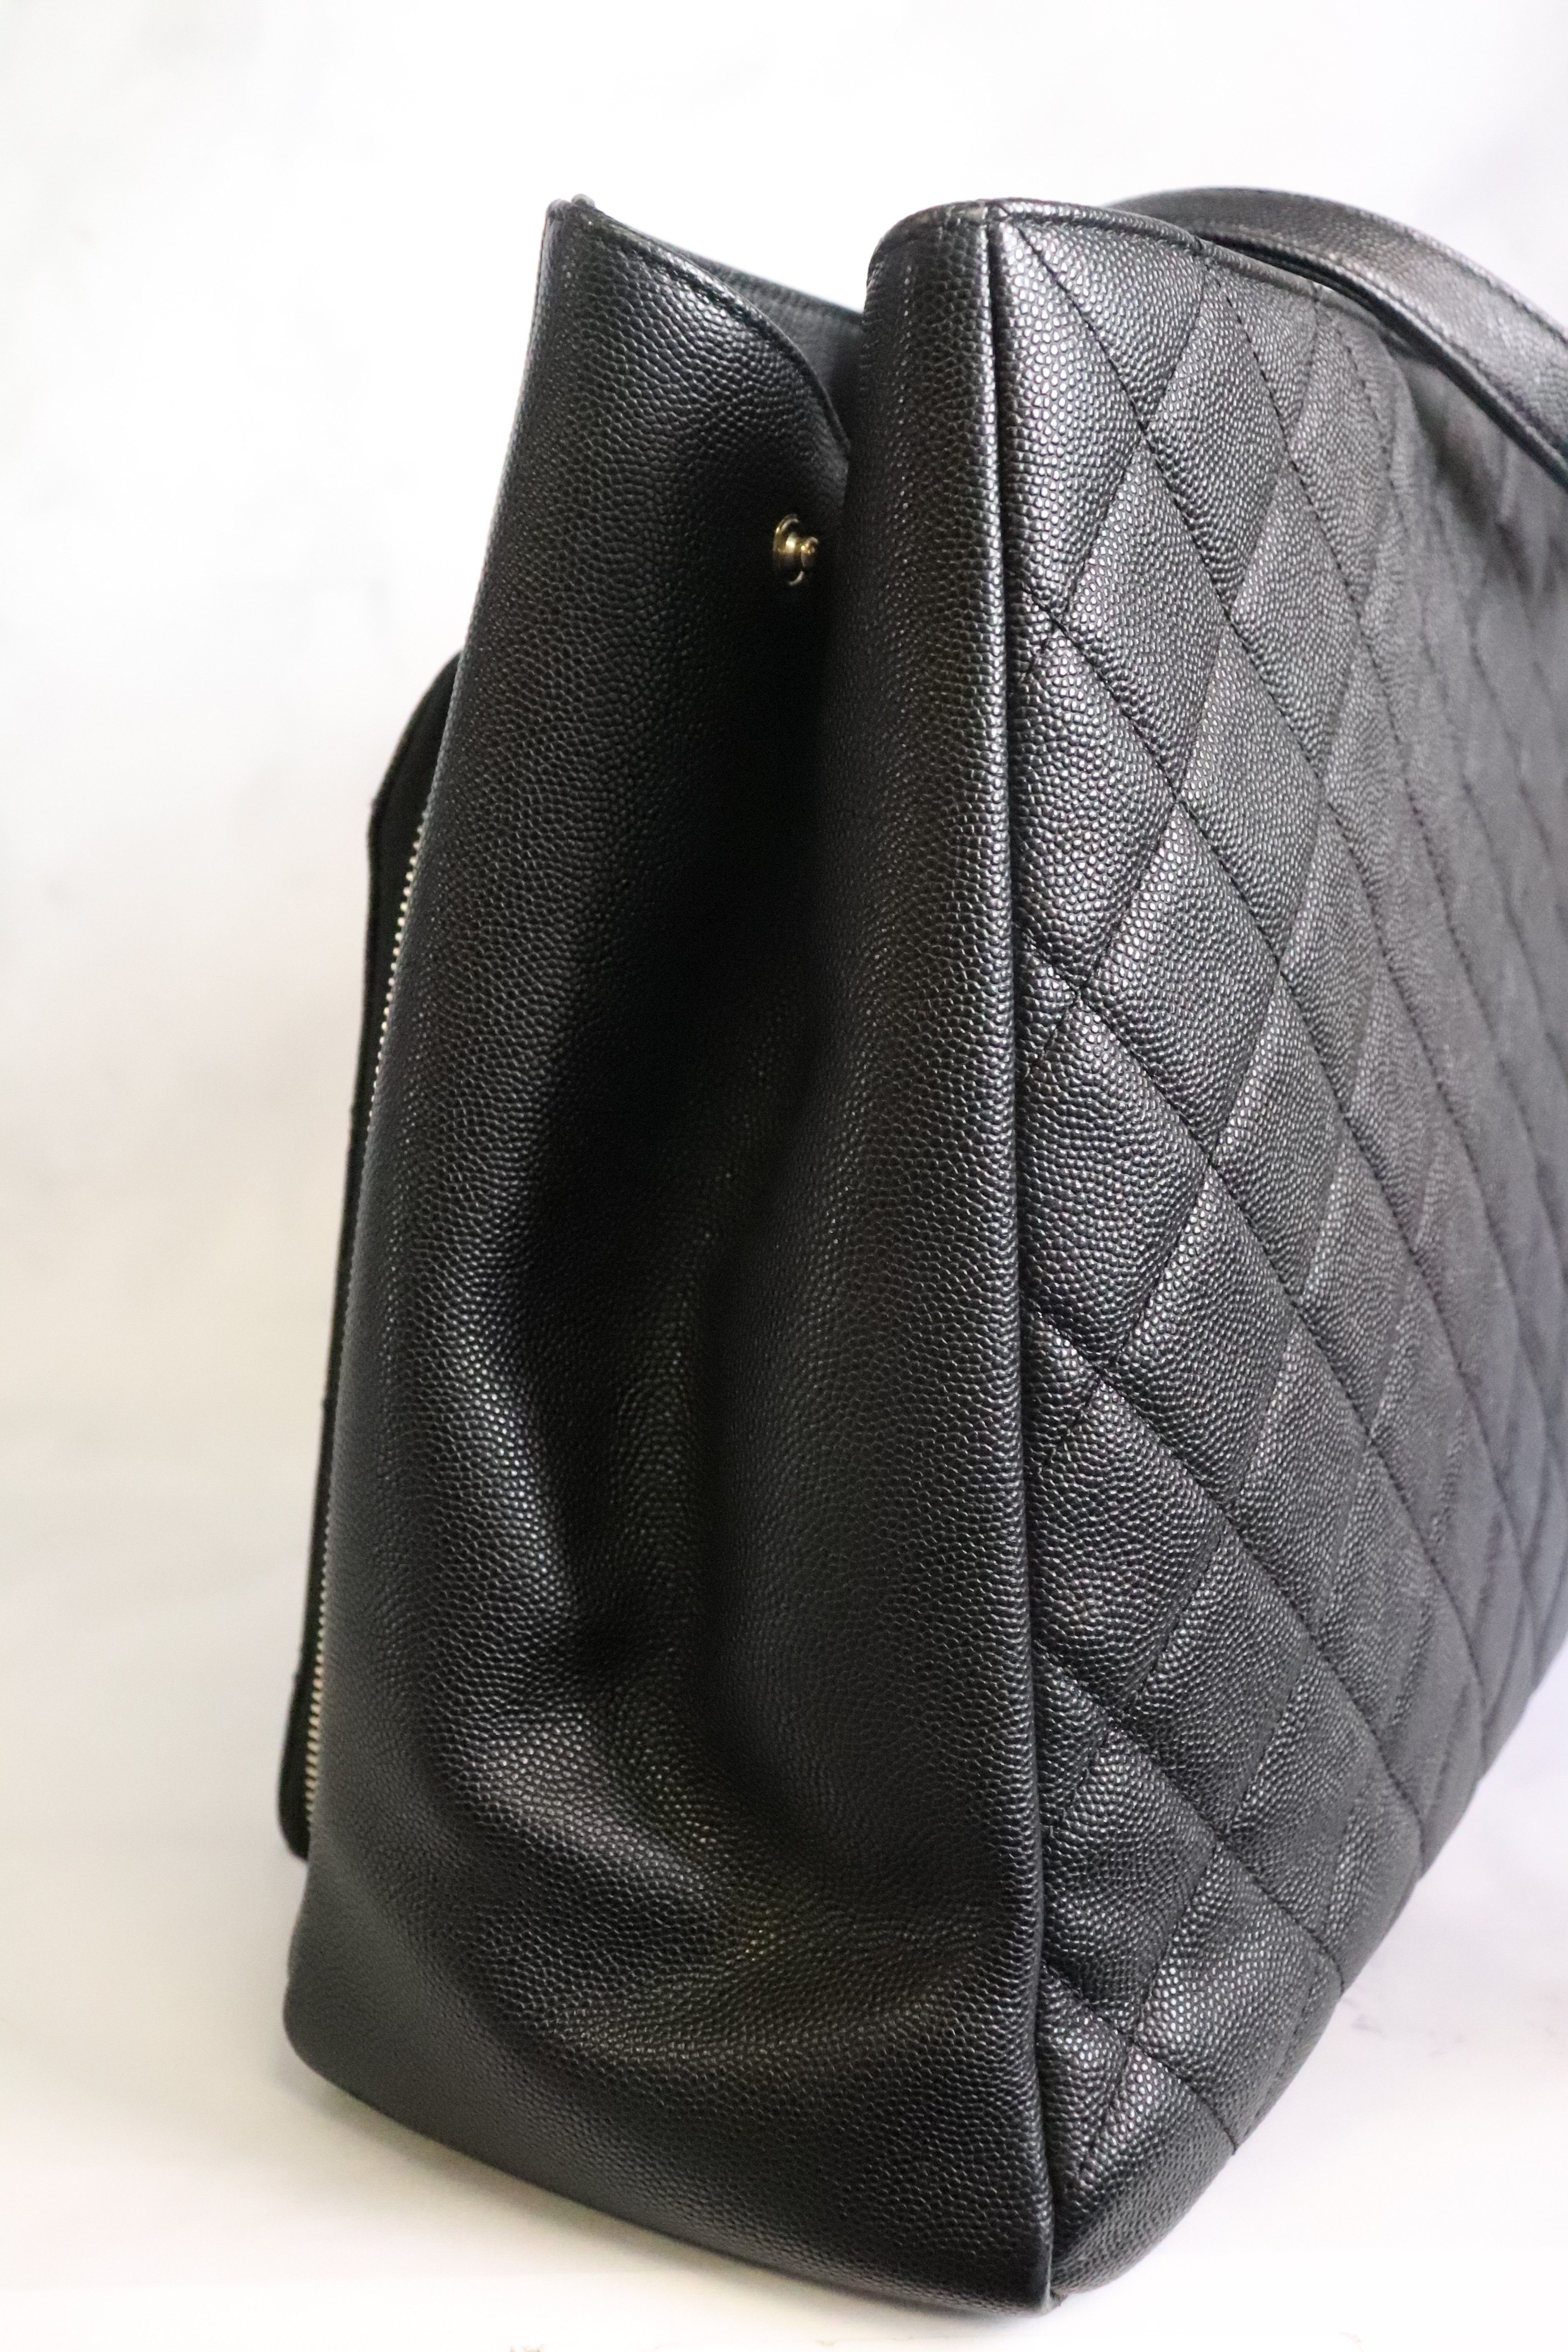 Chanel Business Affinity leather handbag - ShopStyle Shoulder Bags